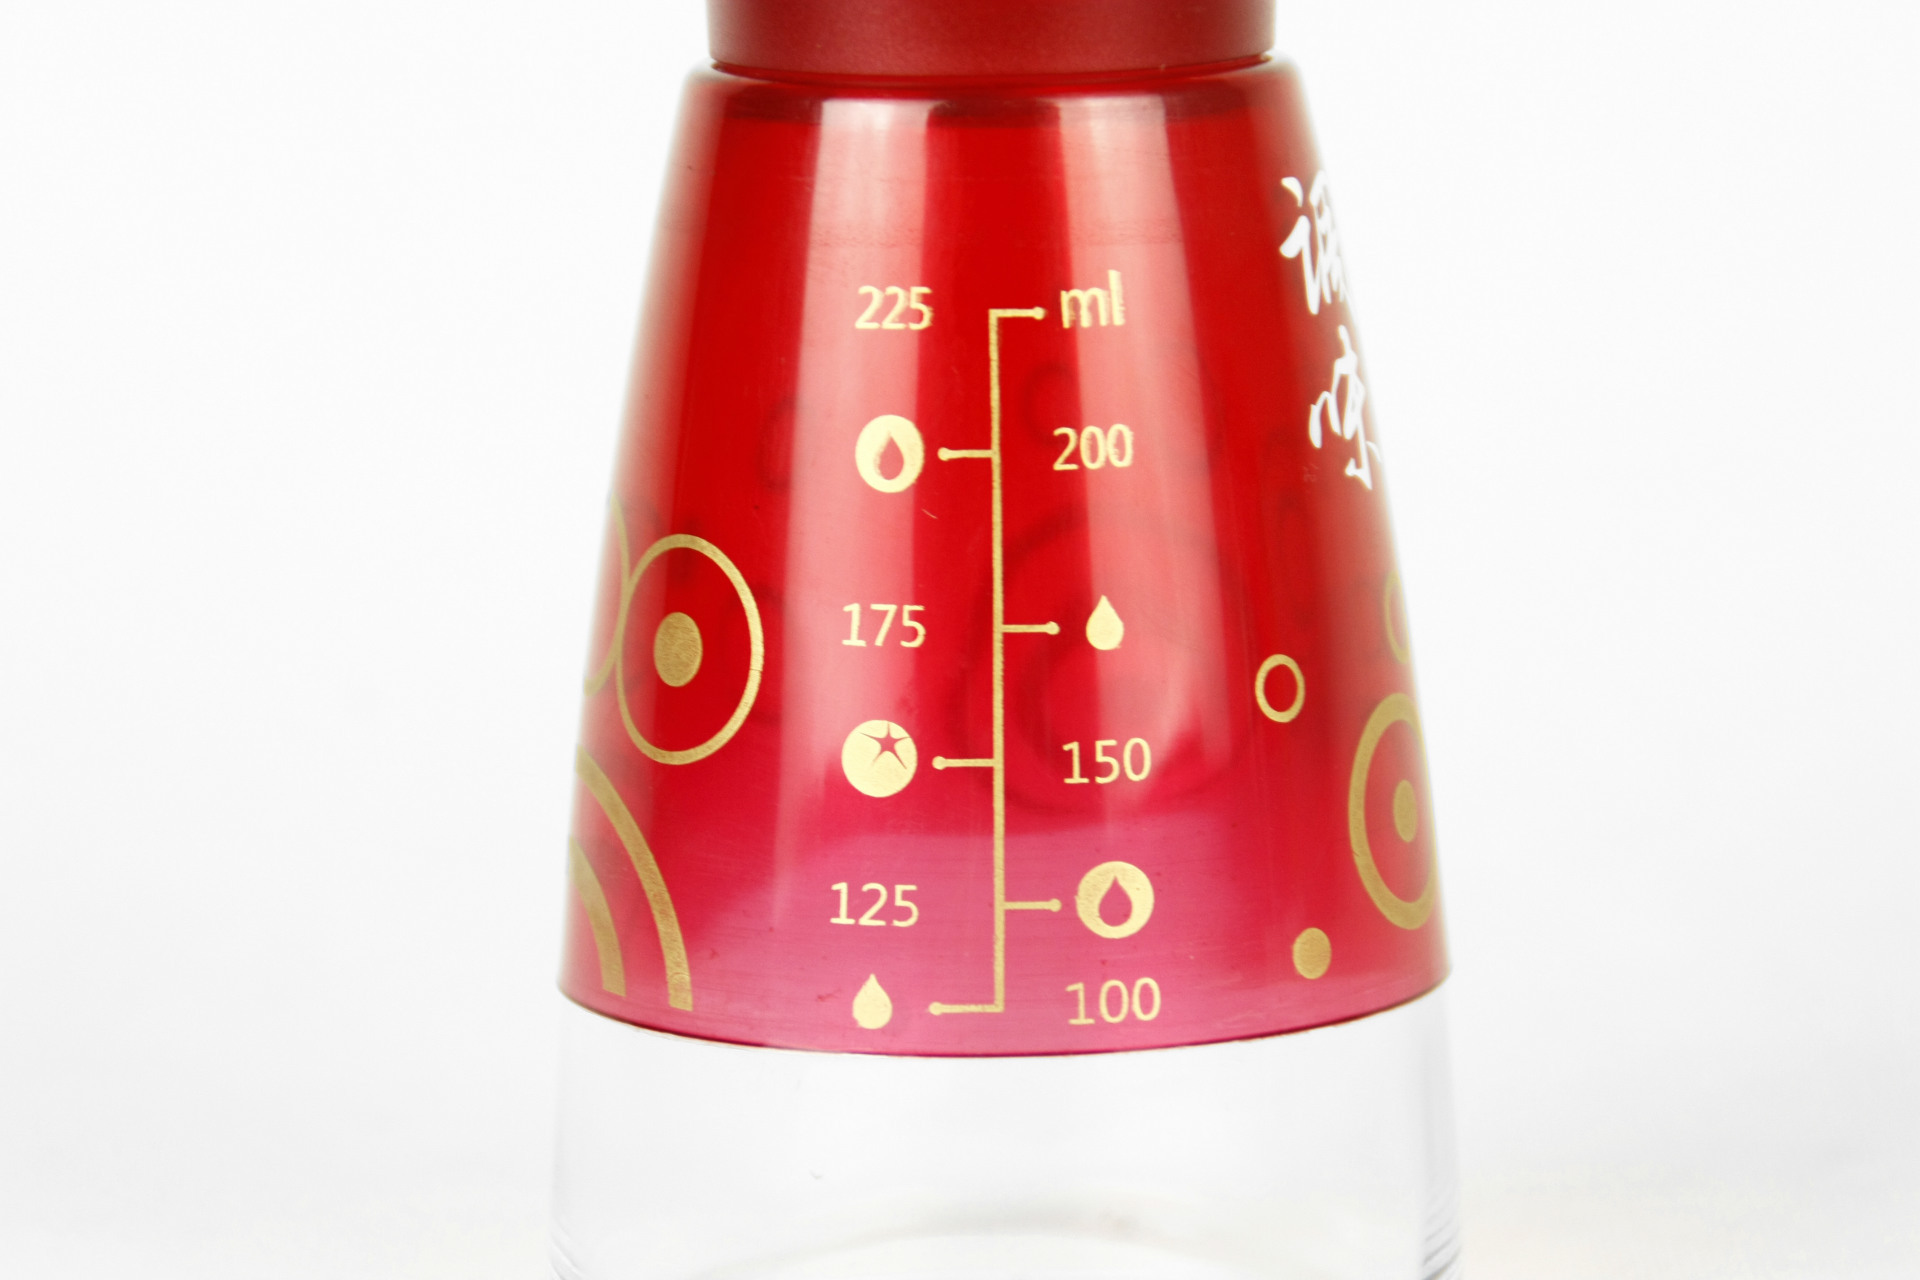 星橙XC-YC250餐桌按压定量油壶X1单个 调料瓶 调料罐